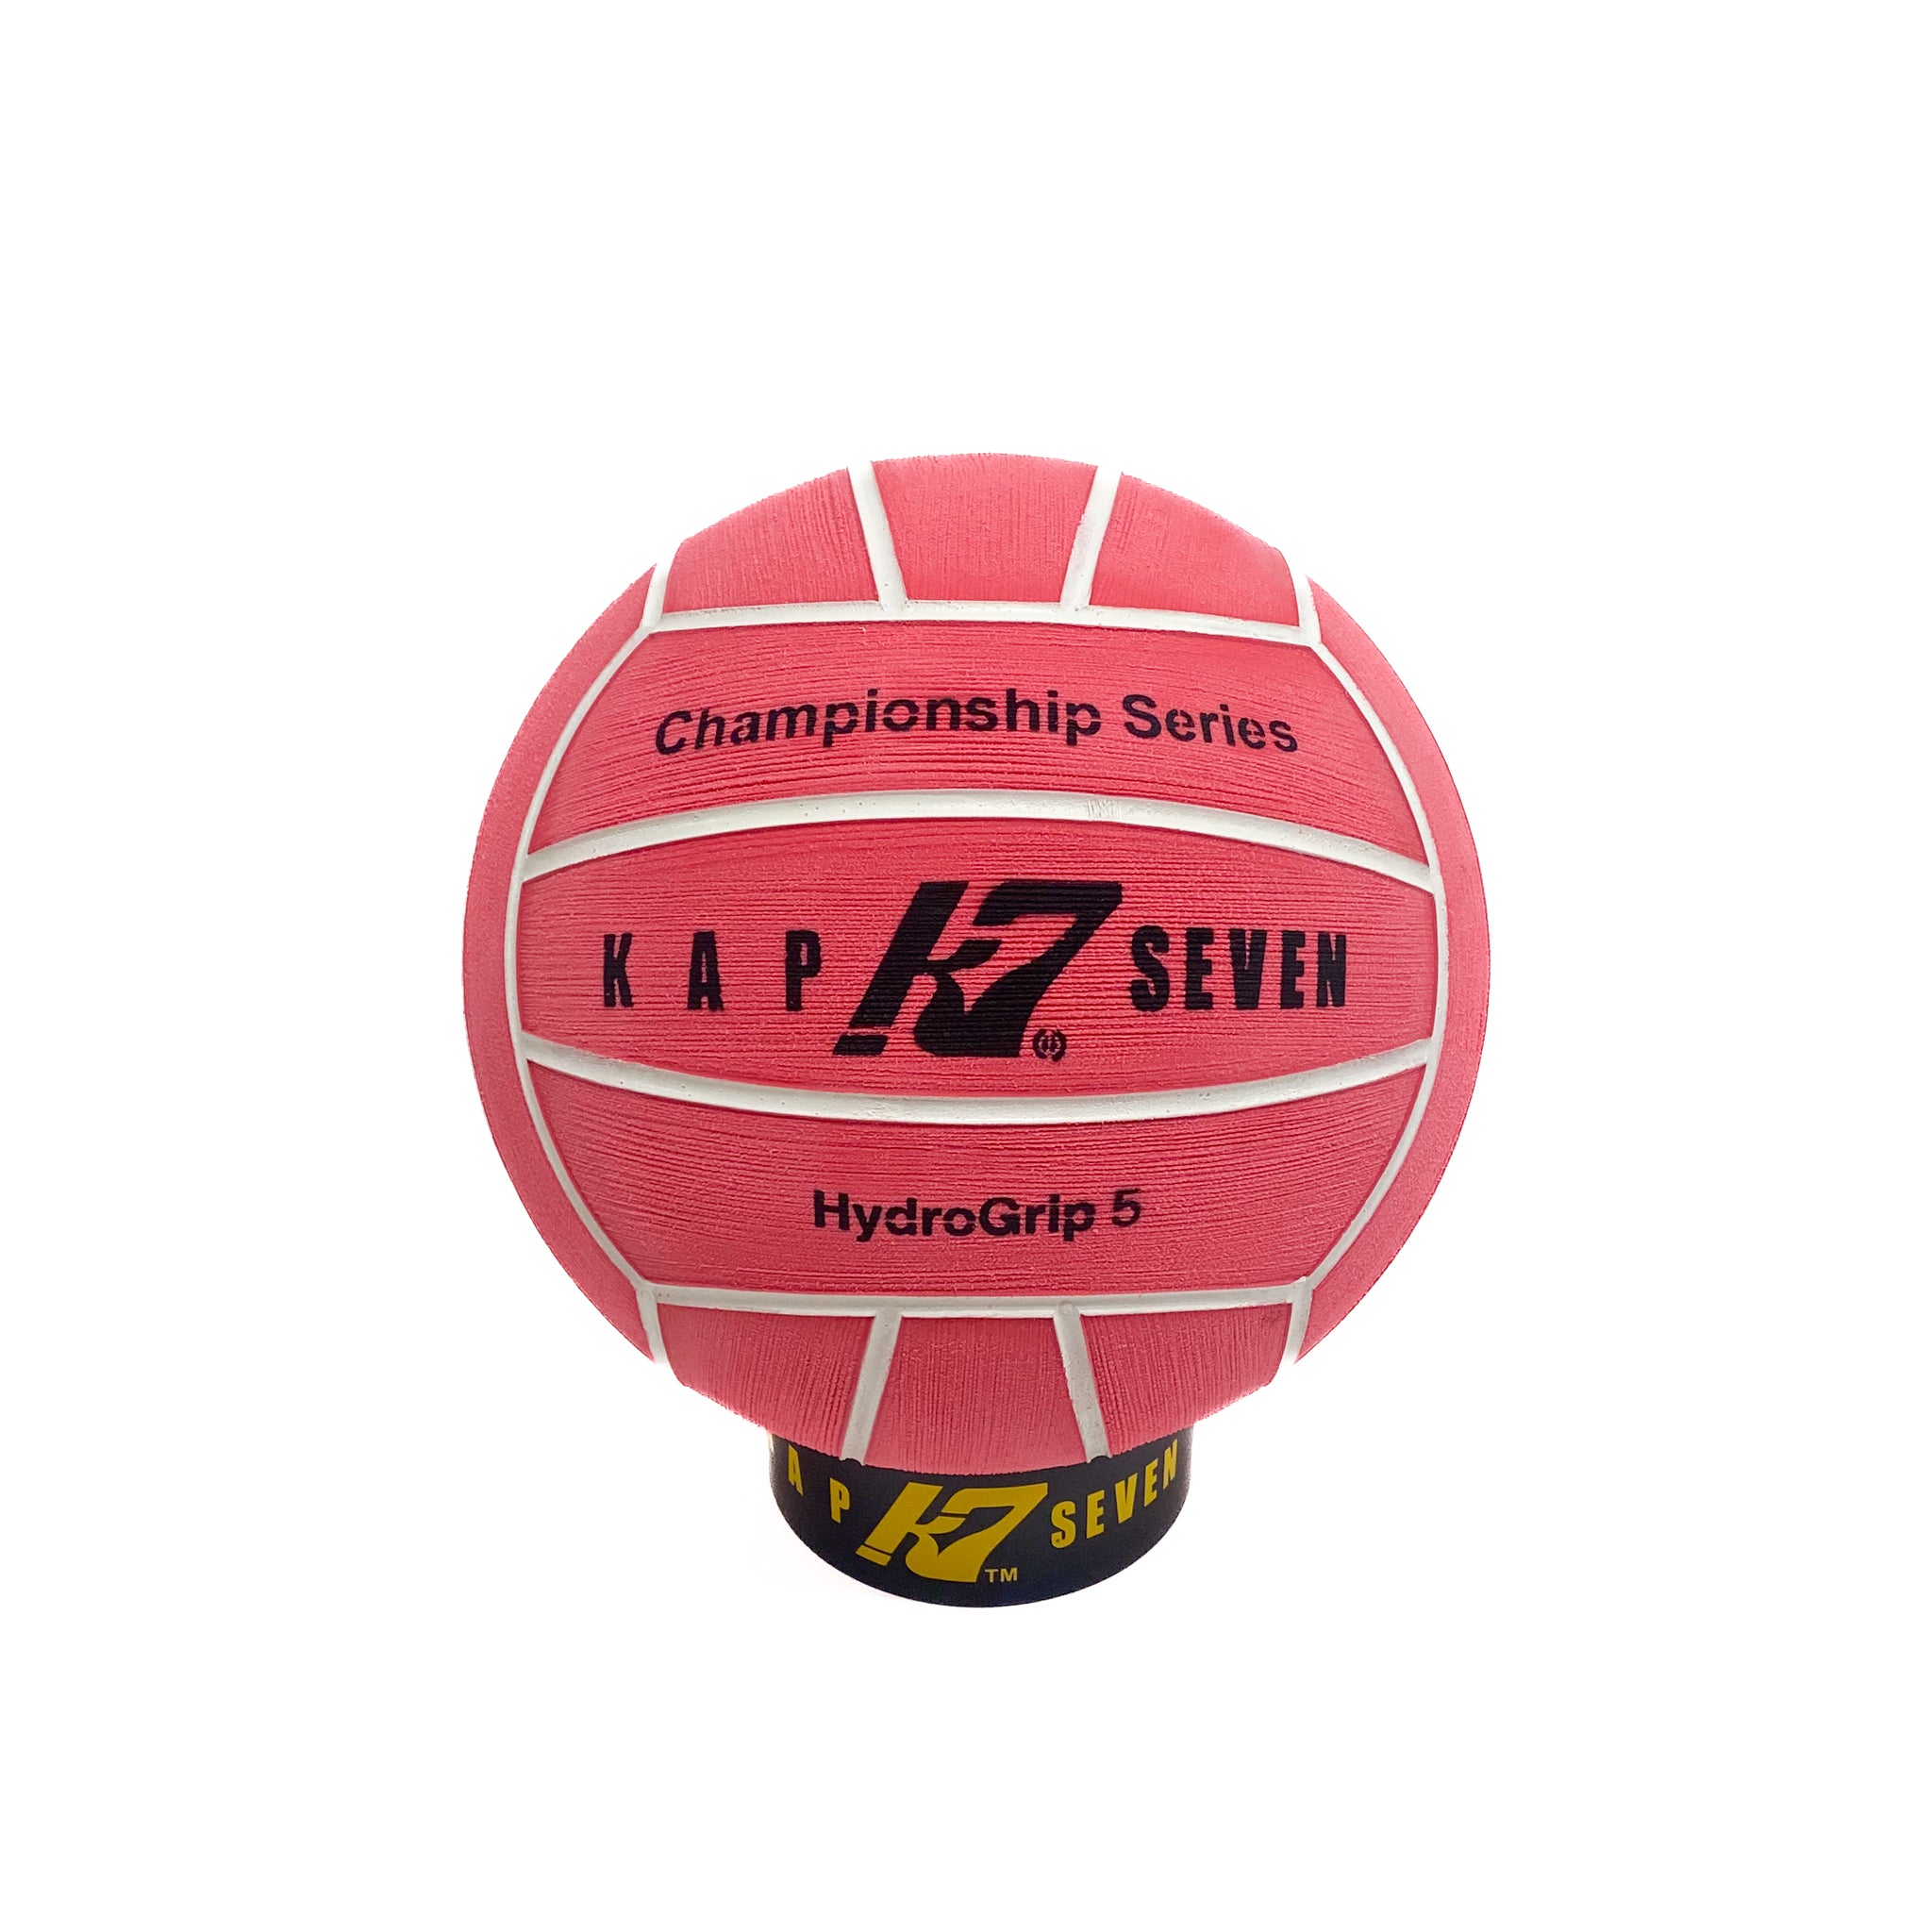 KAP7 International: Water Polo Balls, Custom TURBO Swimwear, Equipment